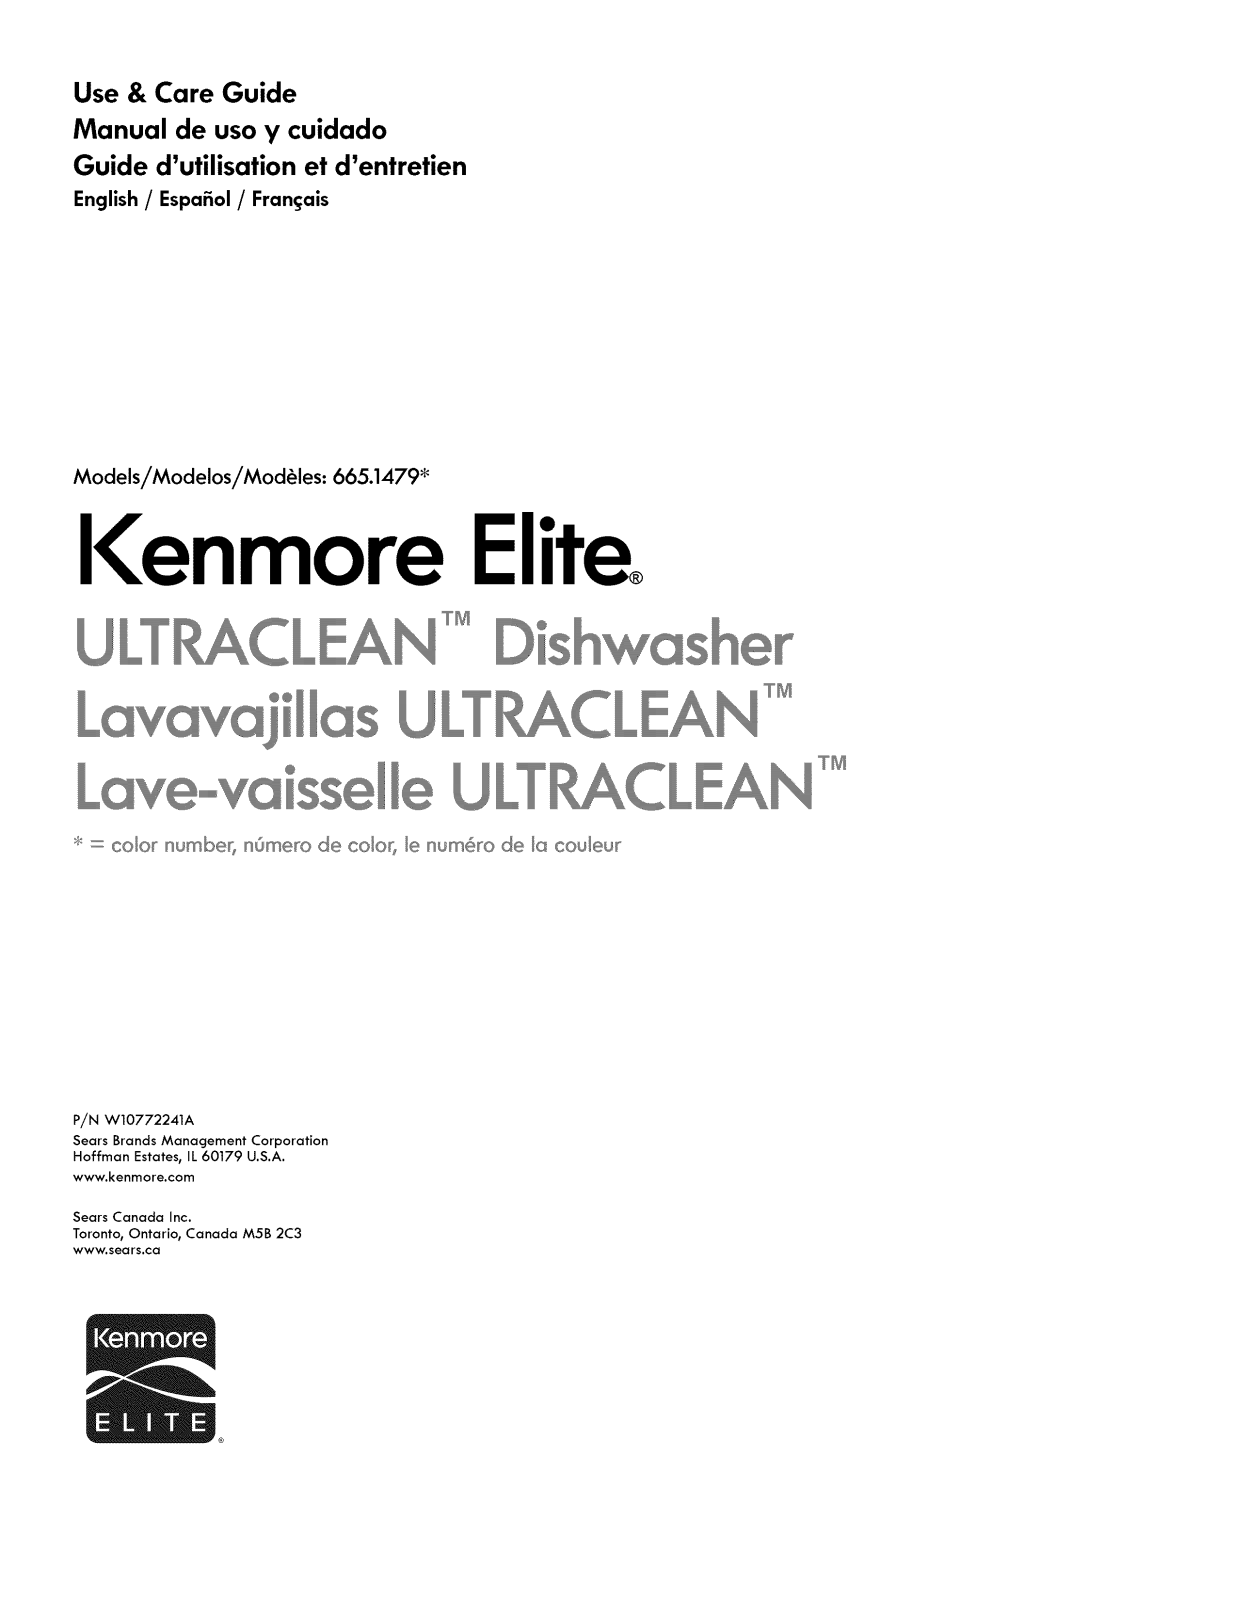 Kenmore Elite 66514792N510, 66514792N511, 66514793N510, 66514793N511, 66514799N510 Owner’s Manual